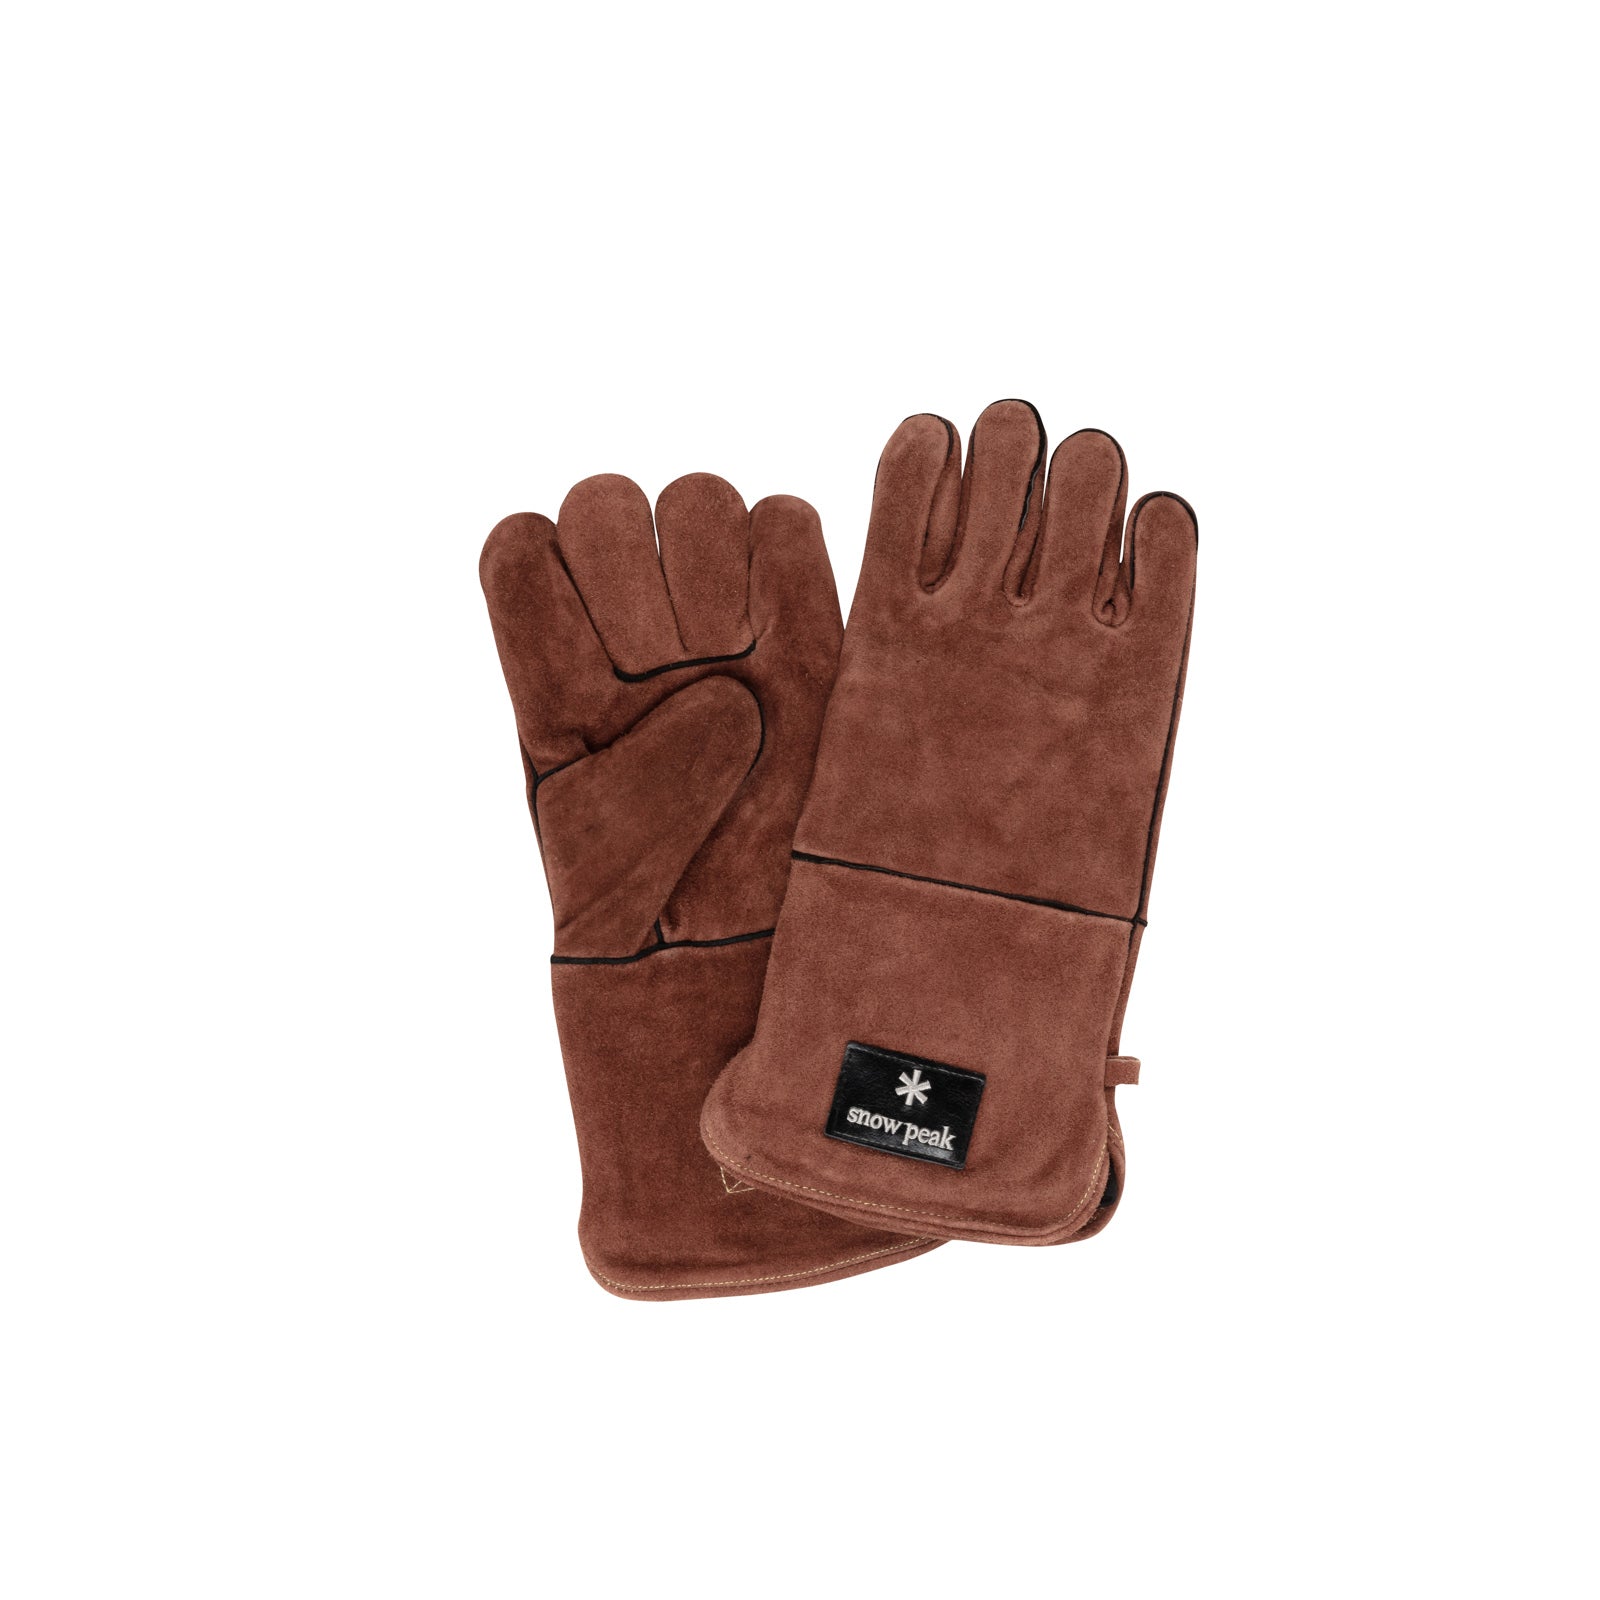 Snow Peak - Fire Gloves